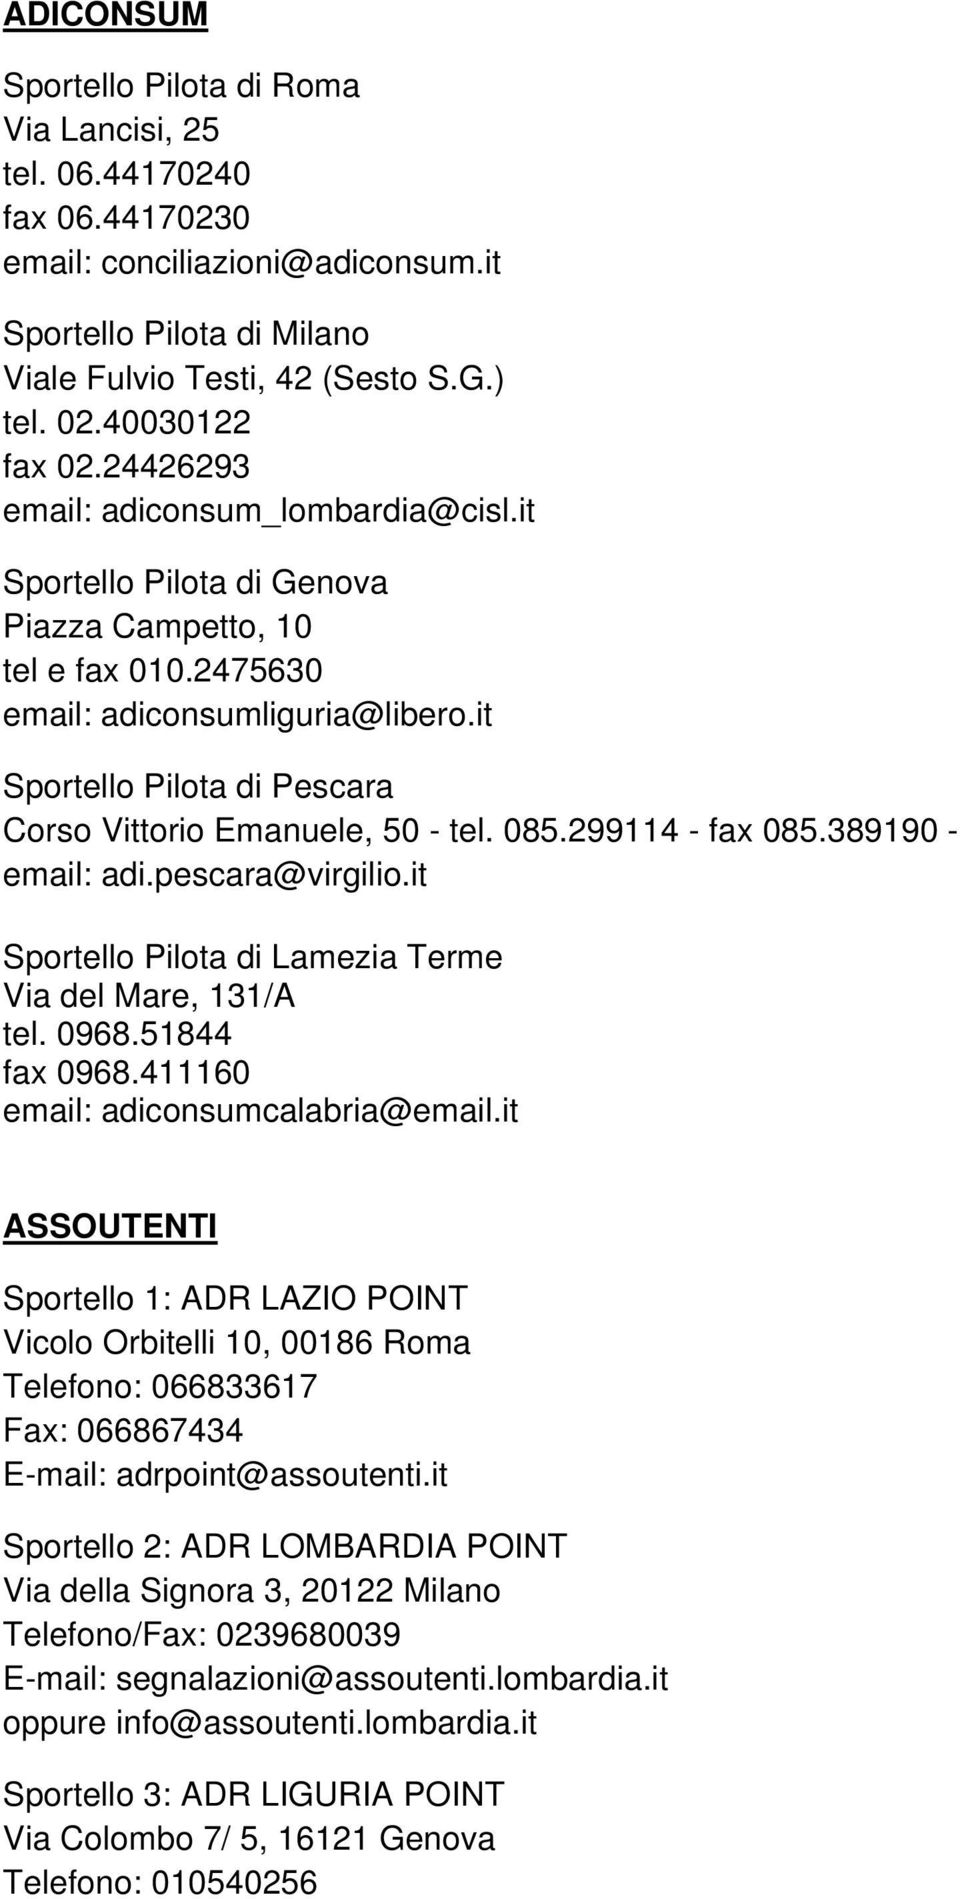 it Sportello Pilota di Pescara Corso Vittorio Emanuele, 50 - tel. 085.299114 - fax 085.389190 - email: adi.pescara@virgilio.it Sportello Pilota di Lamezia Terme Via del Mare, 131/A tel. 0968.